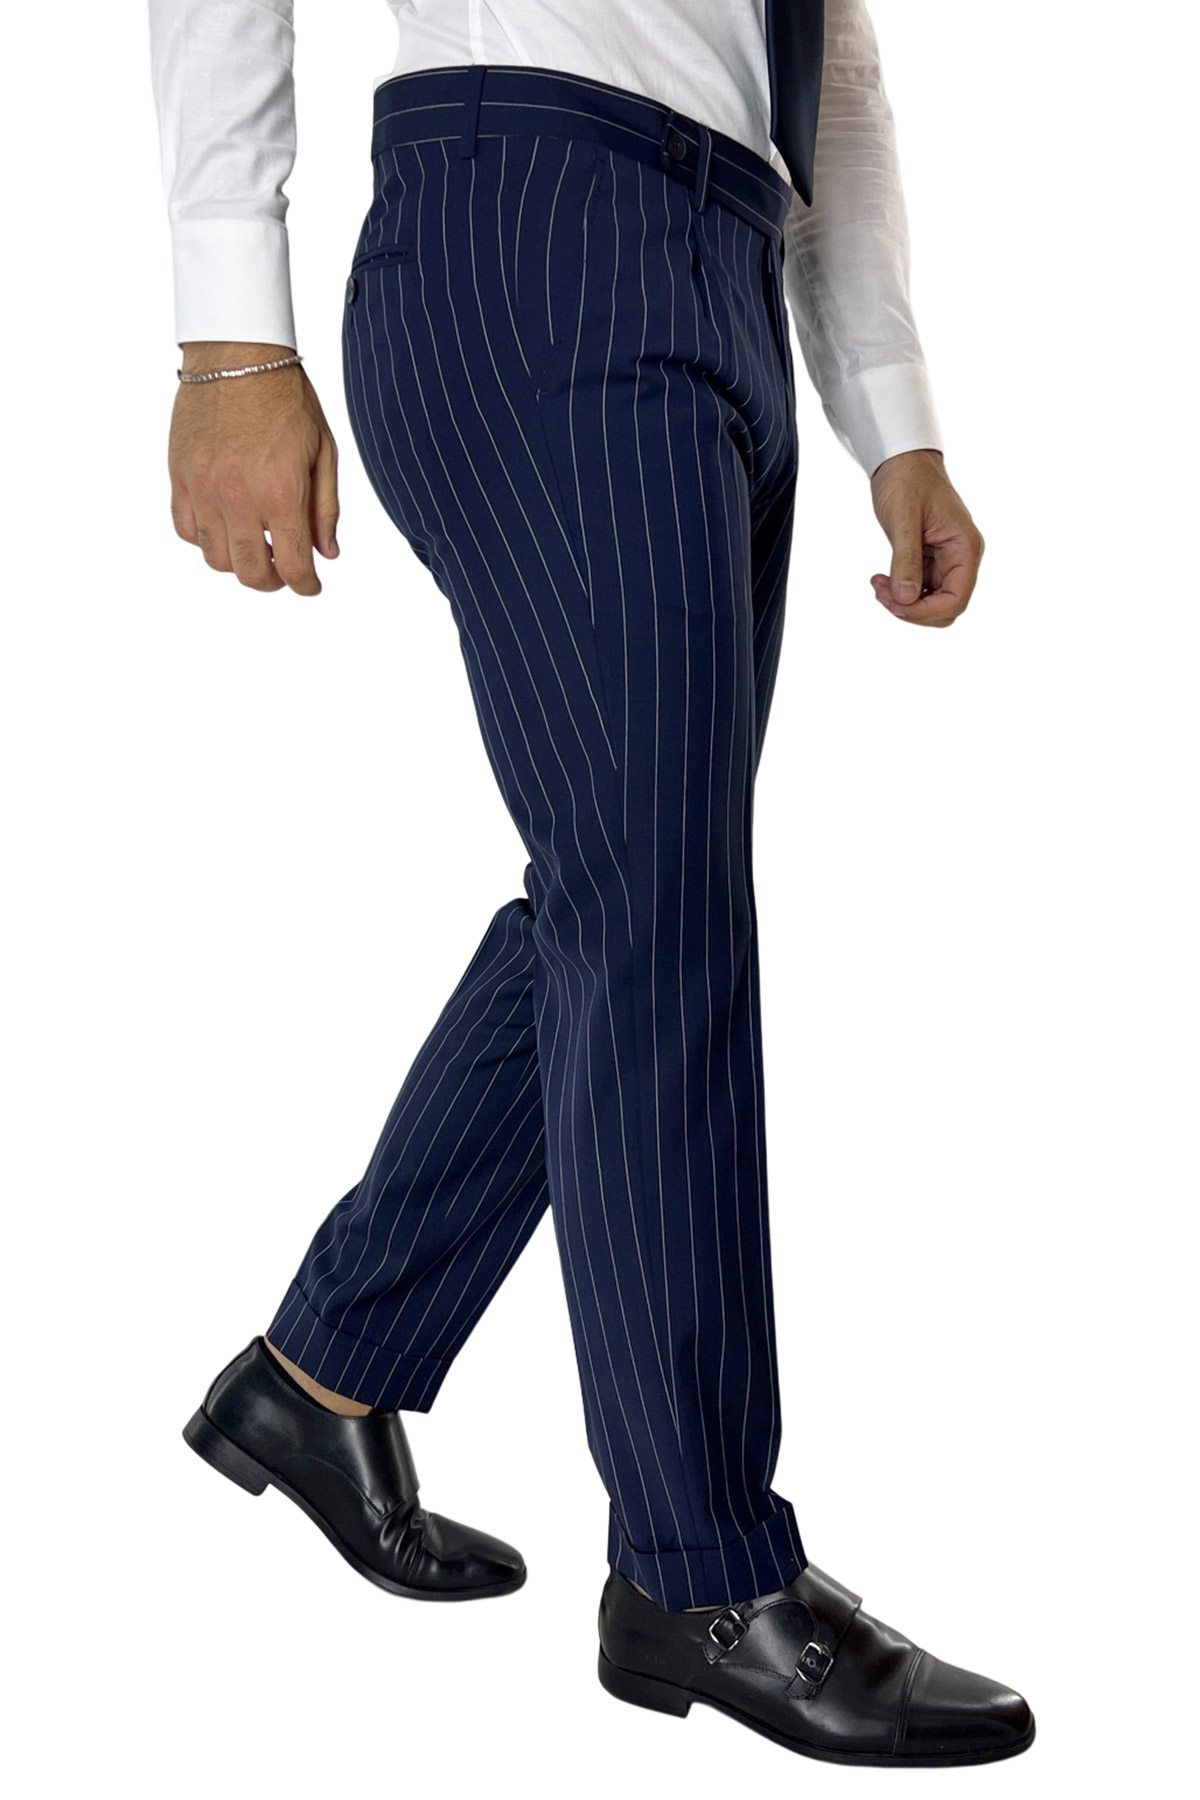 Pantalone uomo blu gessato fresco lana tasca america con una pinces e risvolto 4cm